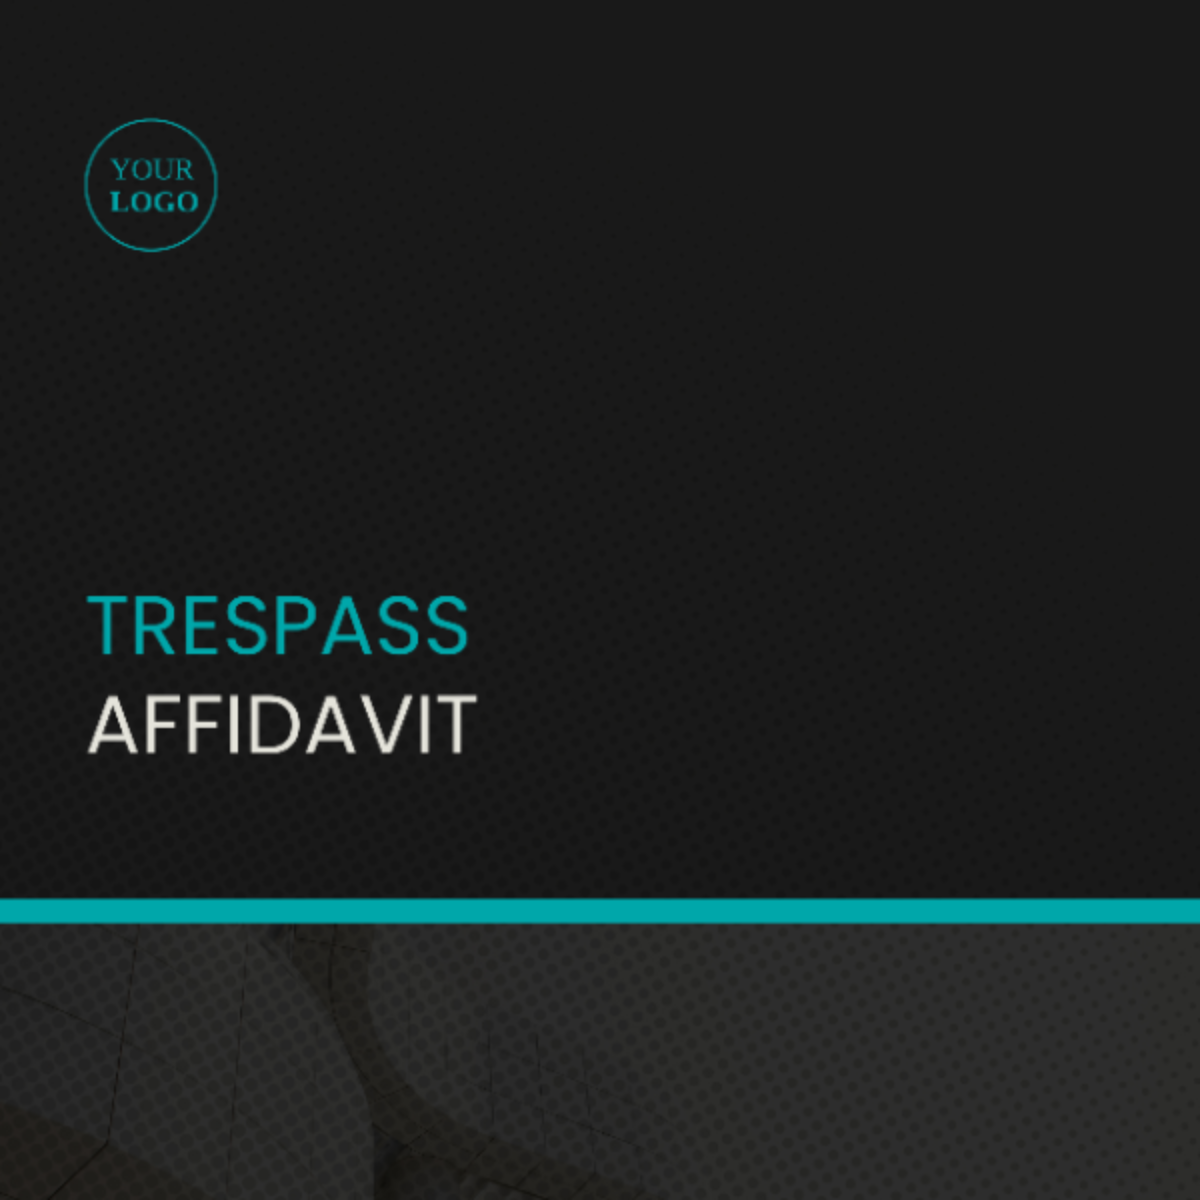 Trespass Affidavit Template